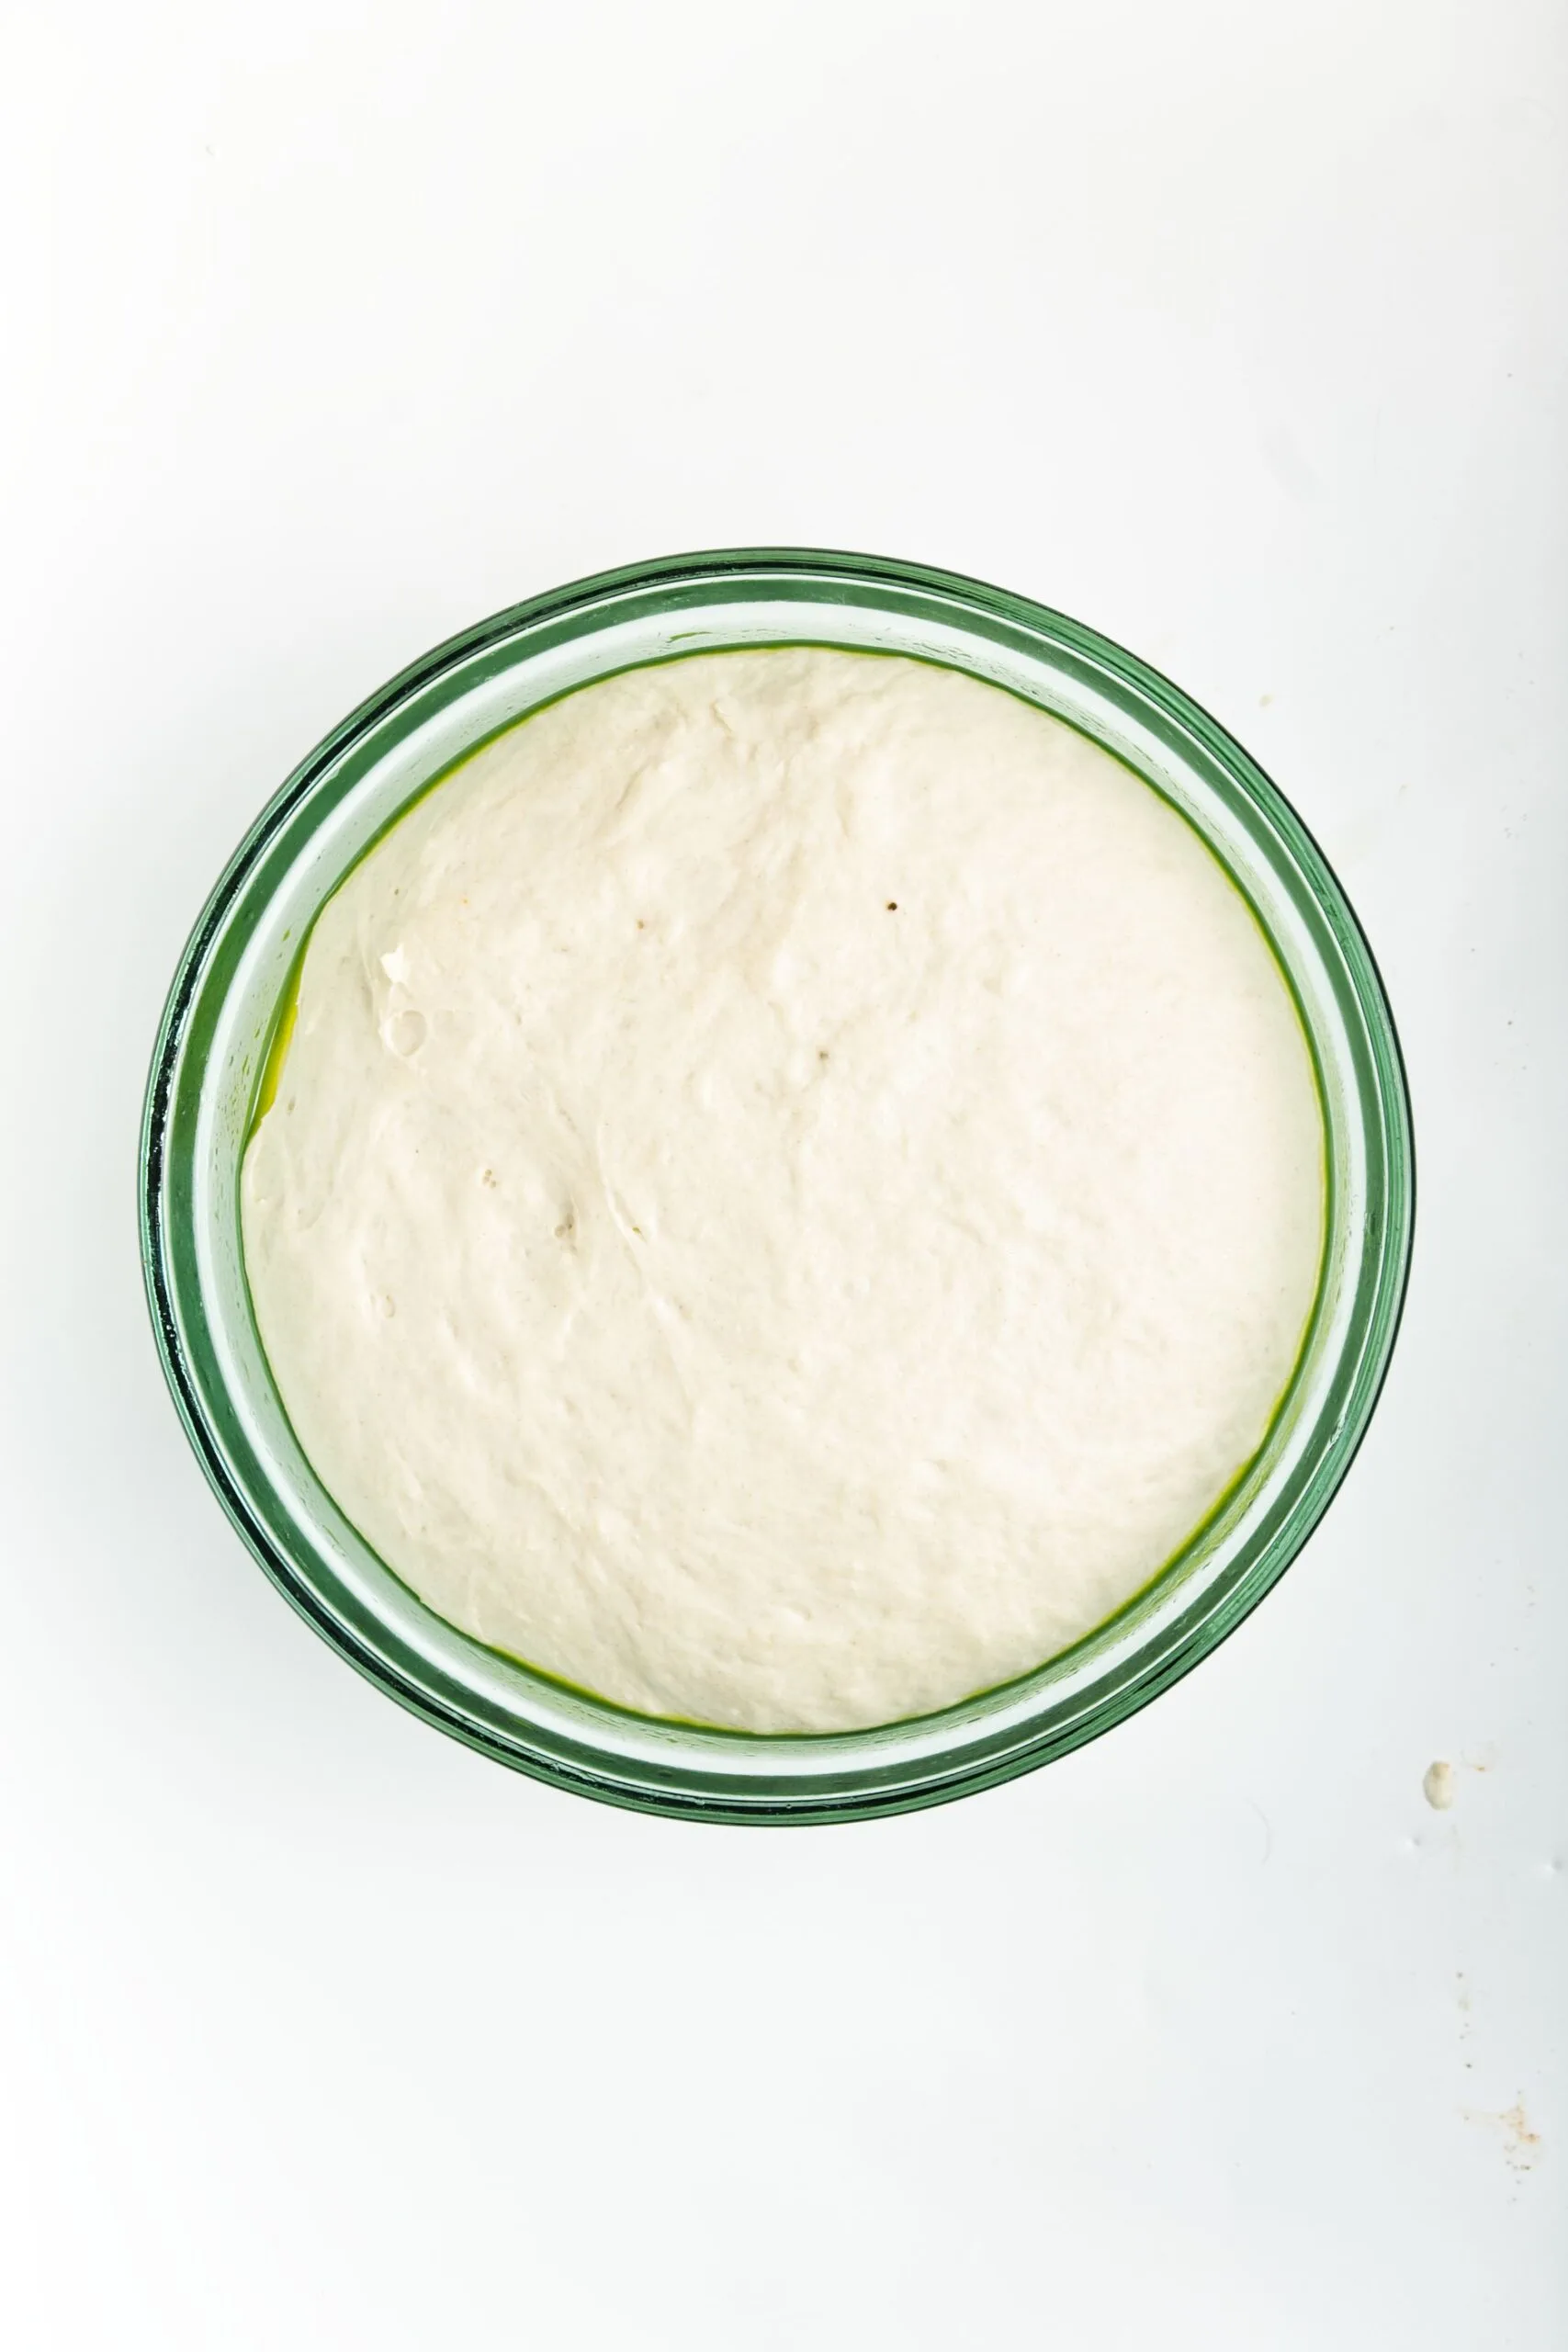 mini pita bread dough